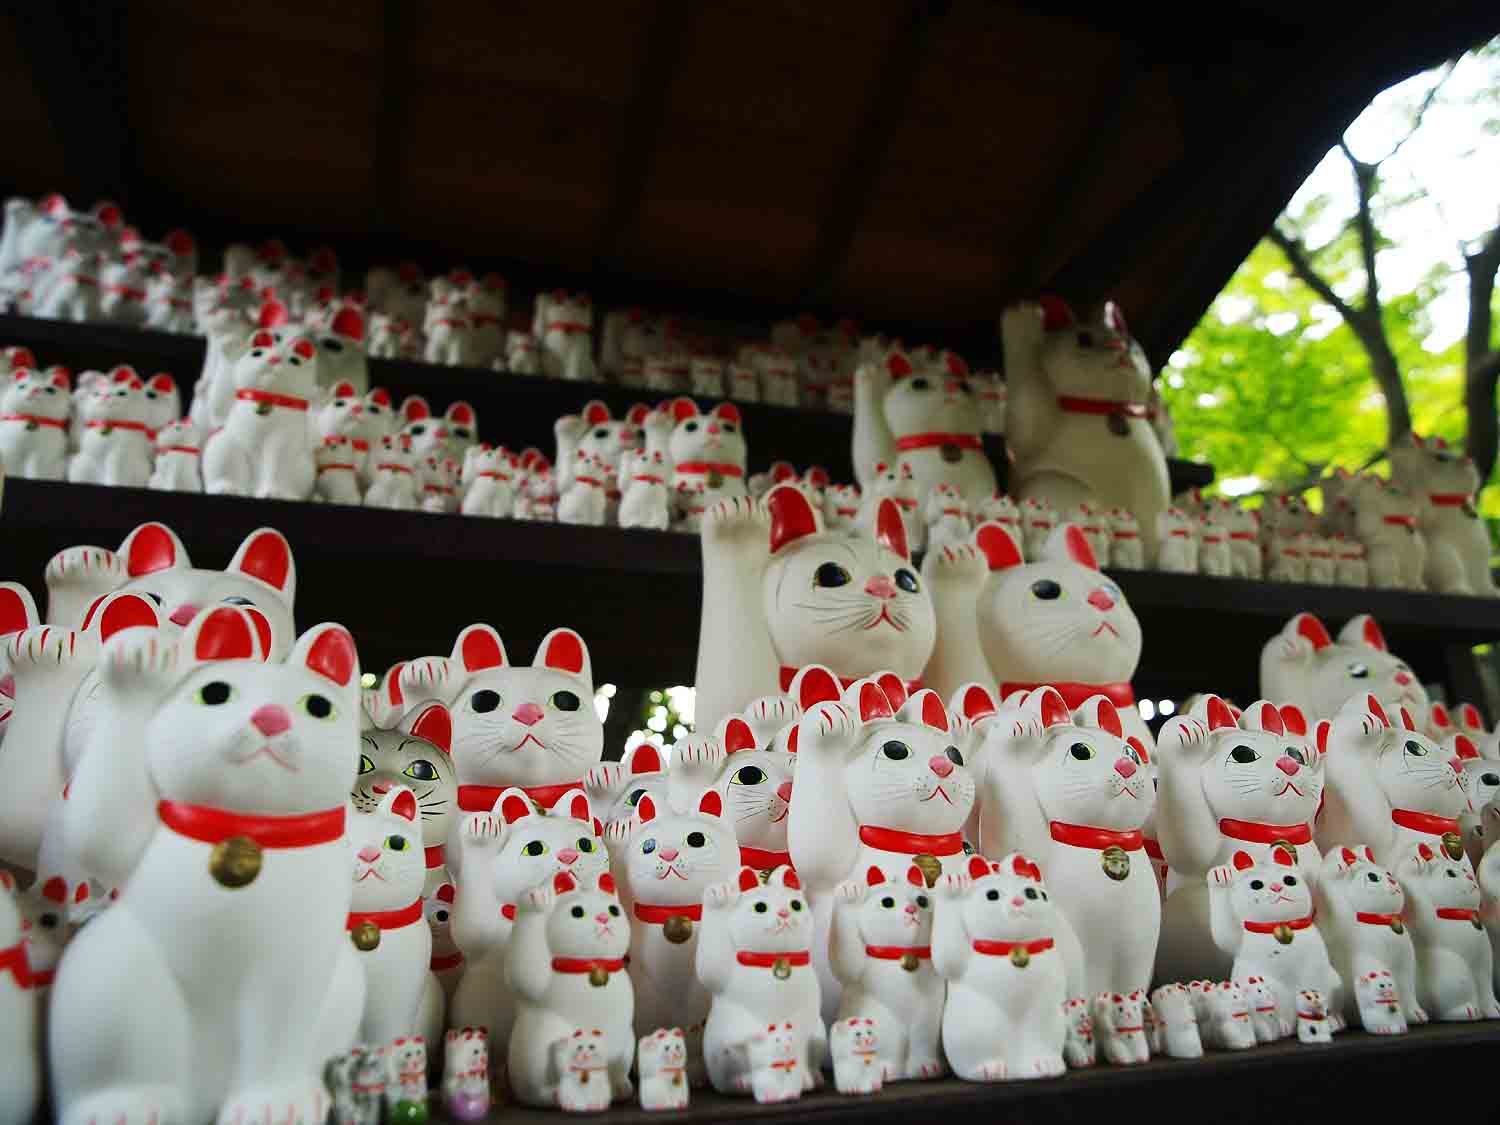 右手を挙げて福を呼ぶ豪徳寺の招き猫 願が成就したお礼として奉納されている 豪徳寺は招き猫発祥の地とも言われるs